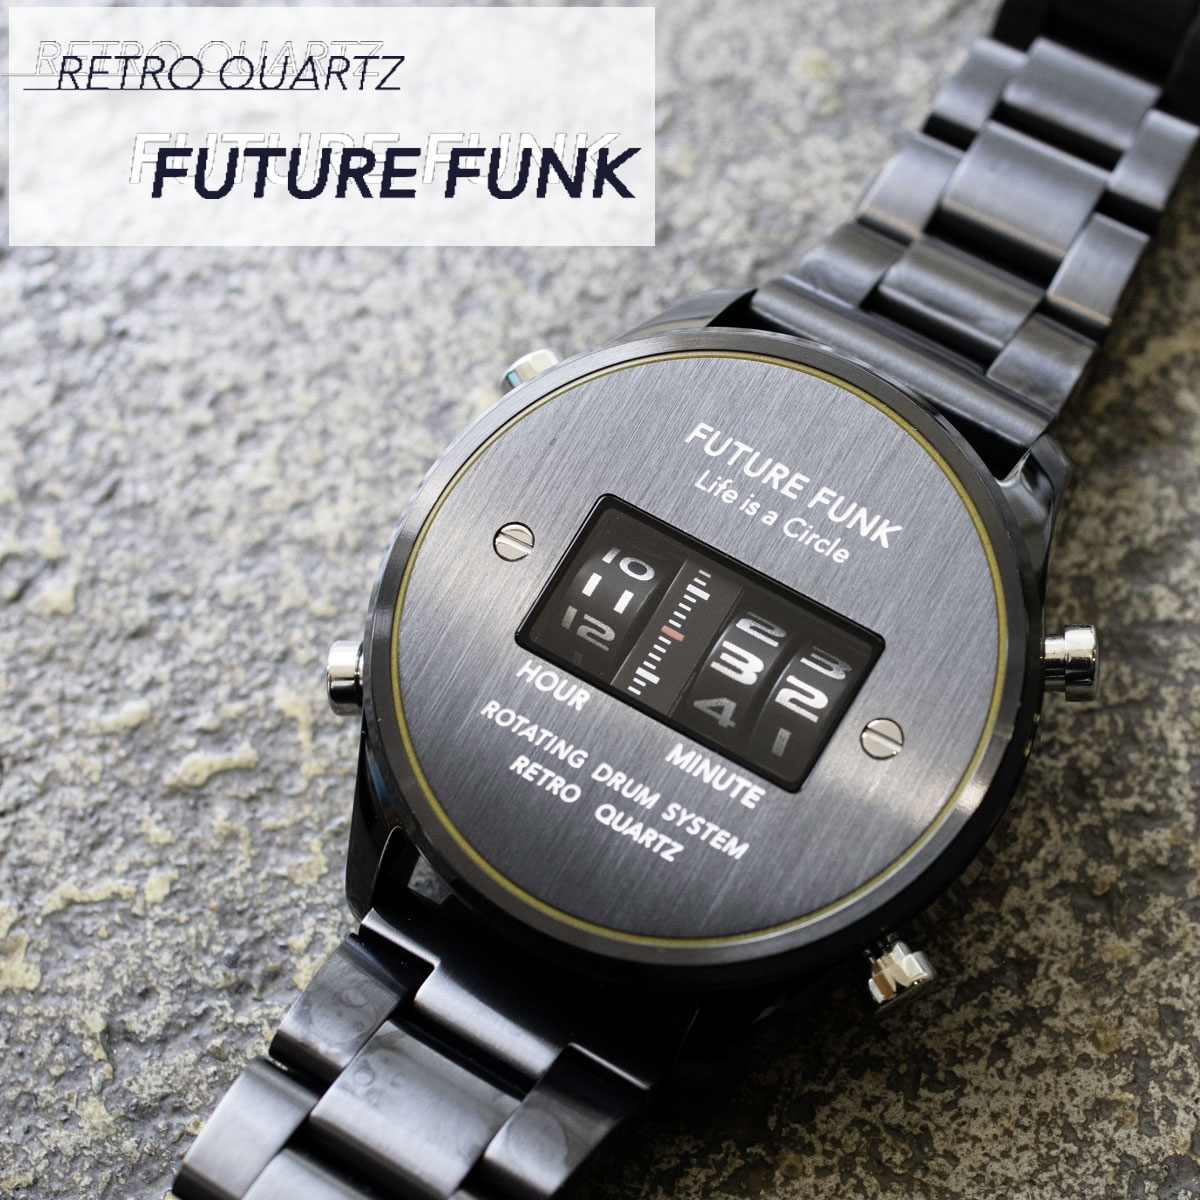 Future Funk フューチャーファンク Future Ff102 Bkyl Mt クオーツ腕時計 アウター メンズ ブラック ブラック アナログ デジタル ウォッチ メタルバンド ギフト プレゼント Sputnicks スプートニクス 鮮度のある Retro Future